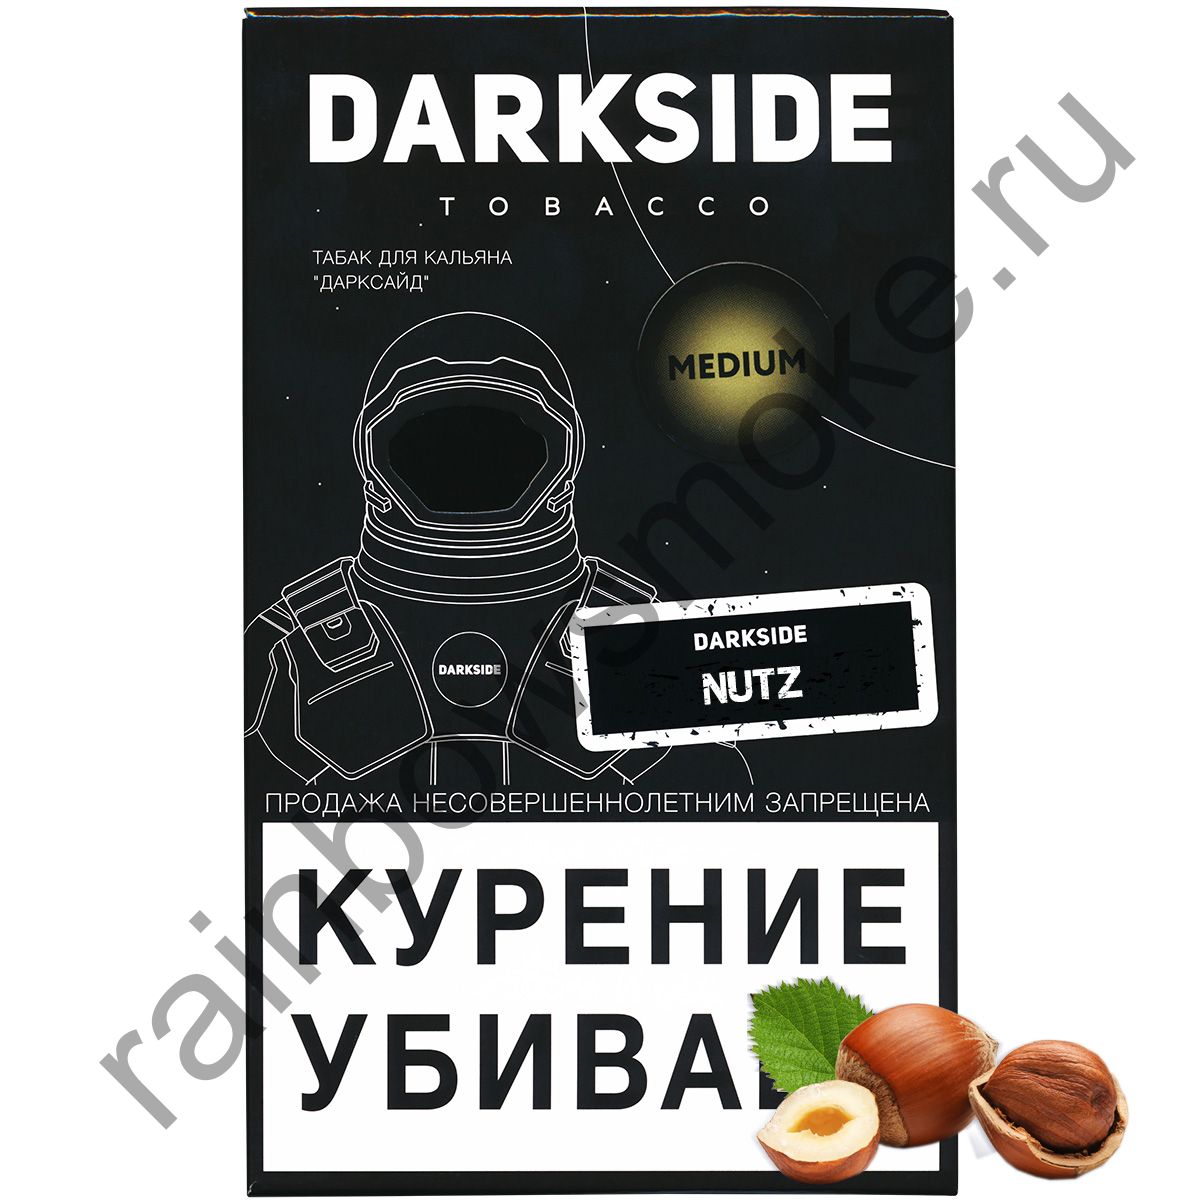 Darkside soup